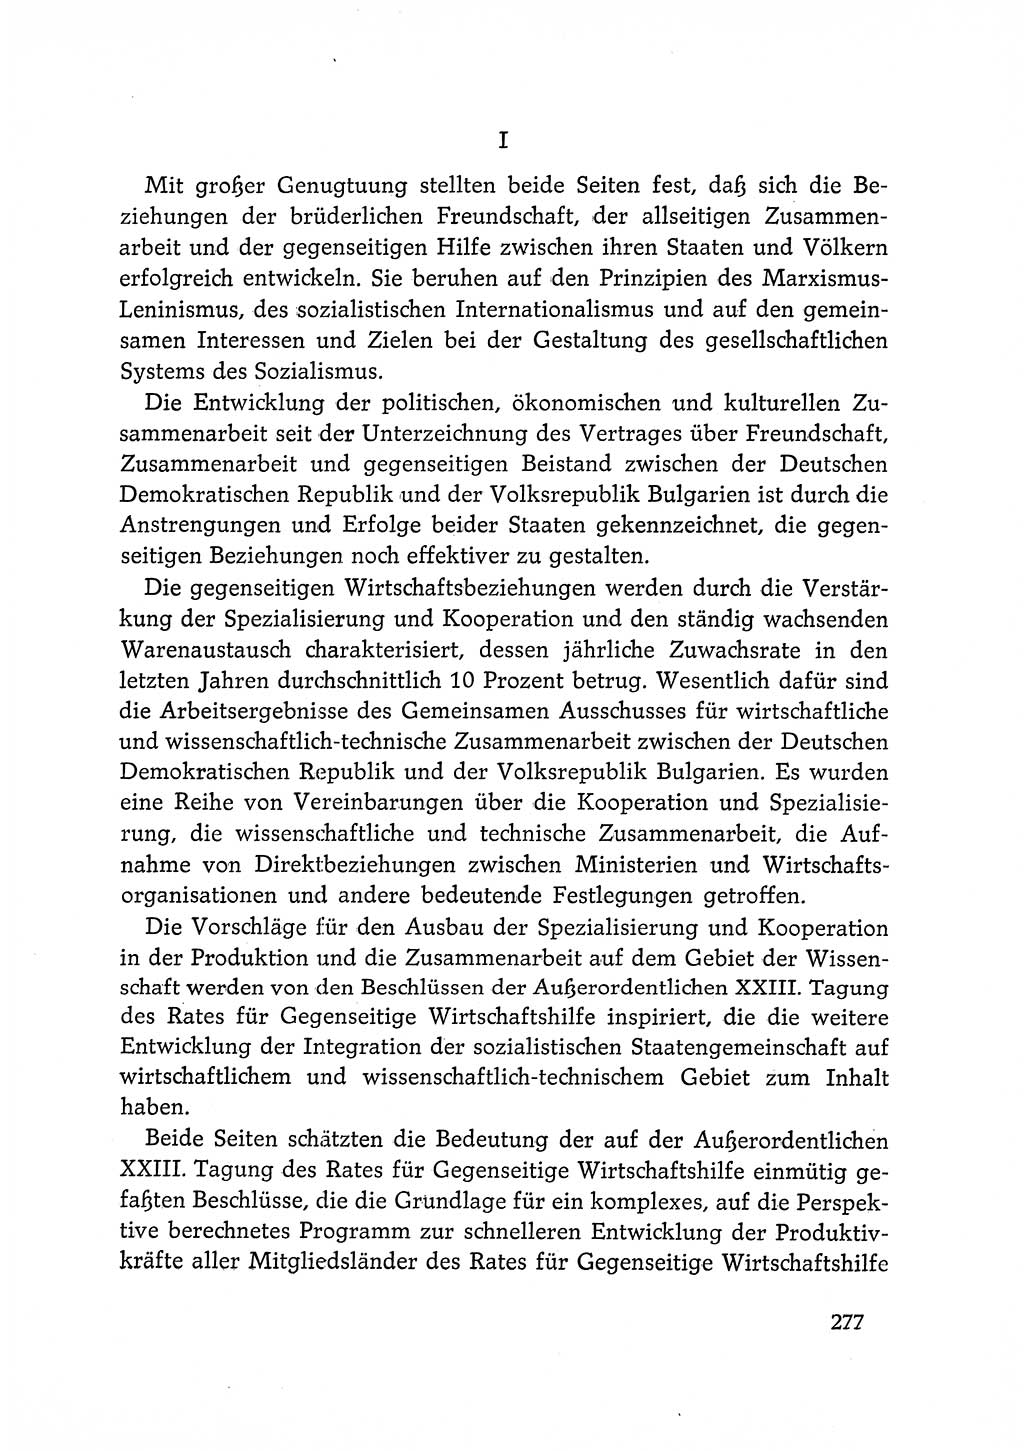 Dokumente der Sozialistischen Einheitspartei Deutschlands (SED) [Deutsche Demokratische Republik (DDR)] 1968-1969, Seite 277 (Dok. SED DDR 1968-1969, S. 277)